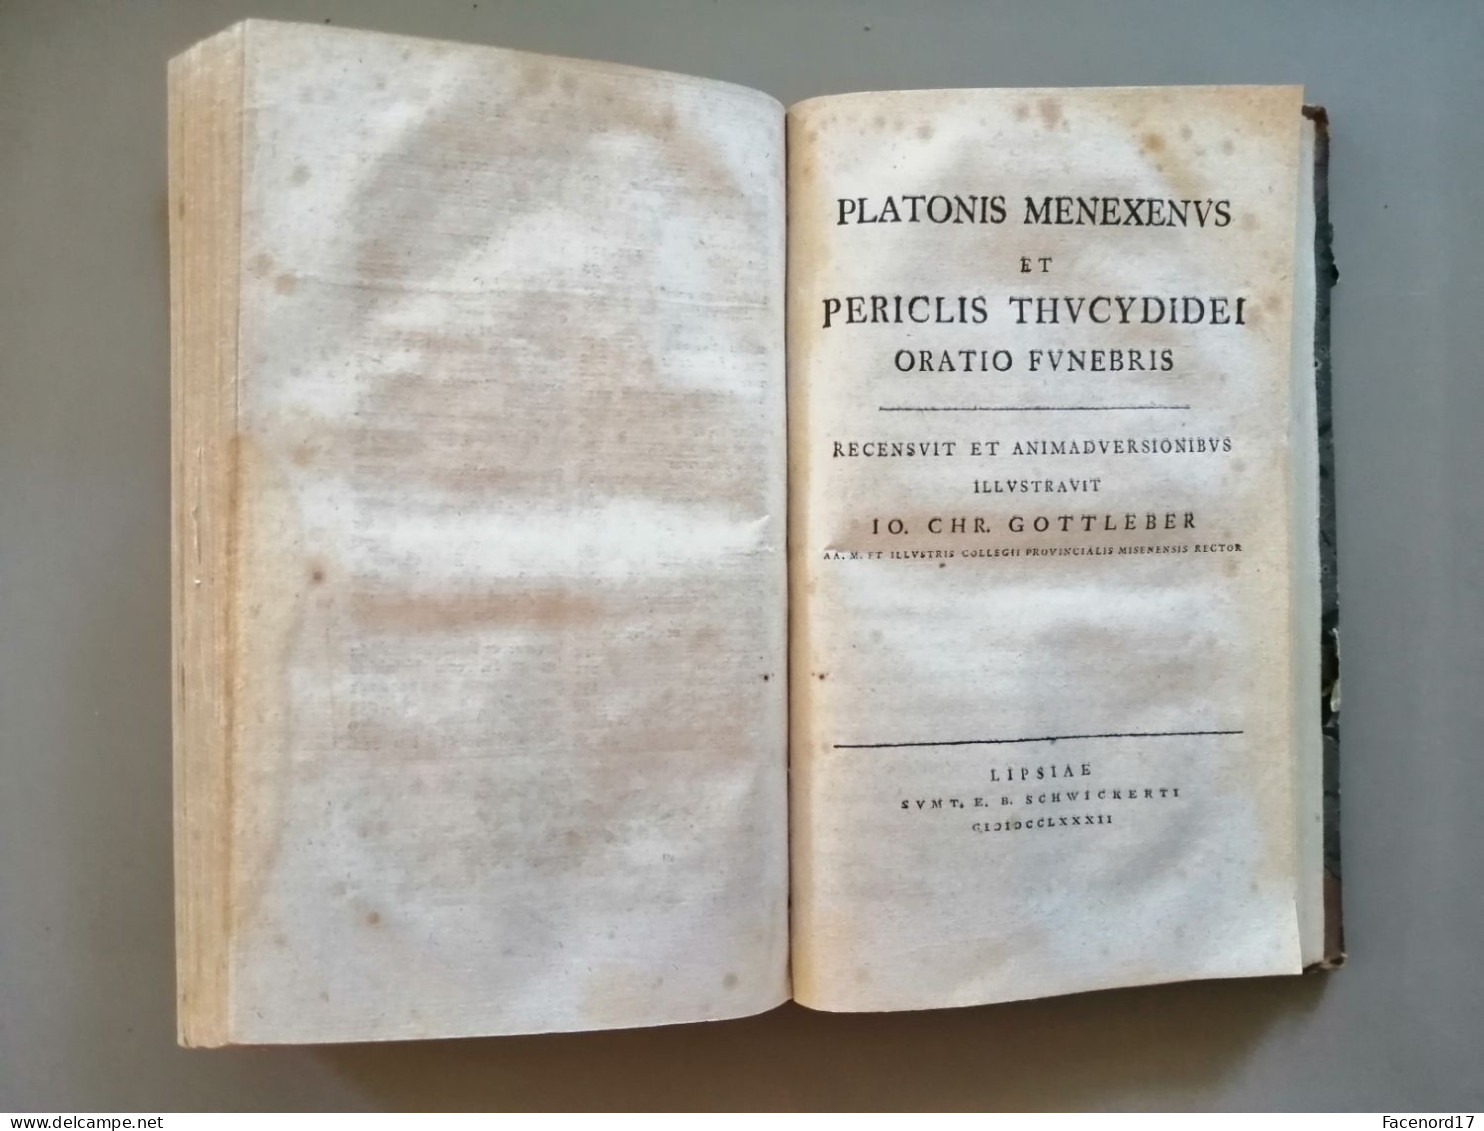 Platonis dialogi quator euthyphro apologia socratis crito phaedo graece Langenheim Leipzig 1770